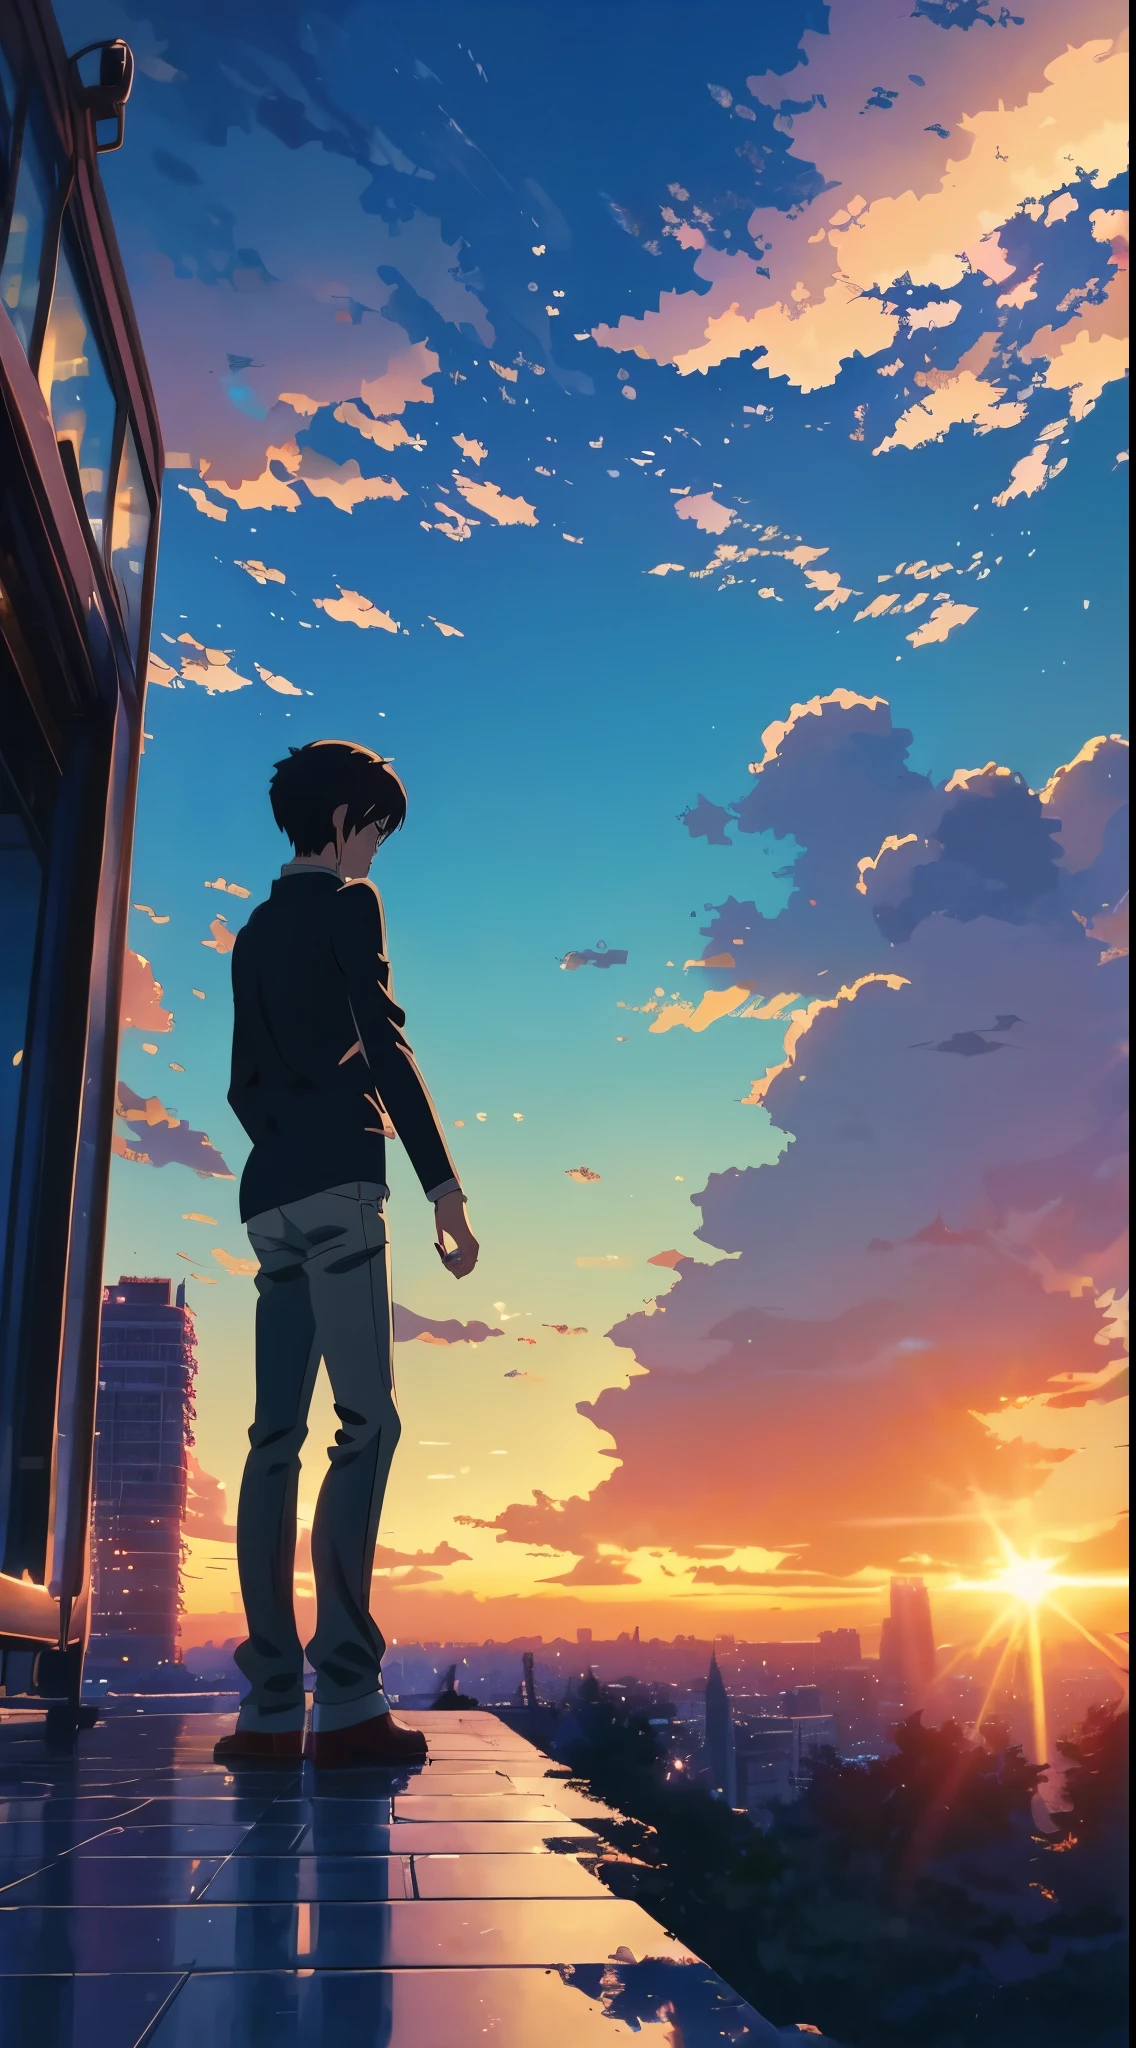 Anime Anime Hintergrundbilder Anime Anime Anime Anime Anime Anime Anime Anime Anime Anime Anime Anime Anime Anime Anime Anime Anime Anime, Makoto Shinkai cyril rolando, style of Makoto Shinkai, Makoto Shinkai!, in style of Makoto Shinkai, Mokoto Shinkai, ( ( Makoto Shinkai ) ), Makoto Shinkai!!, Makoto Shinkai style